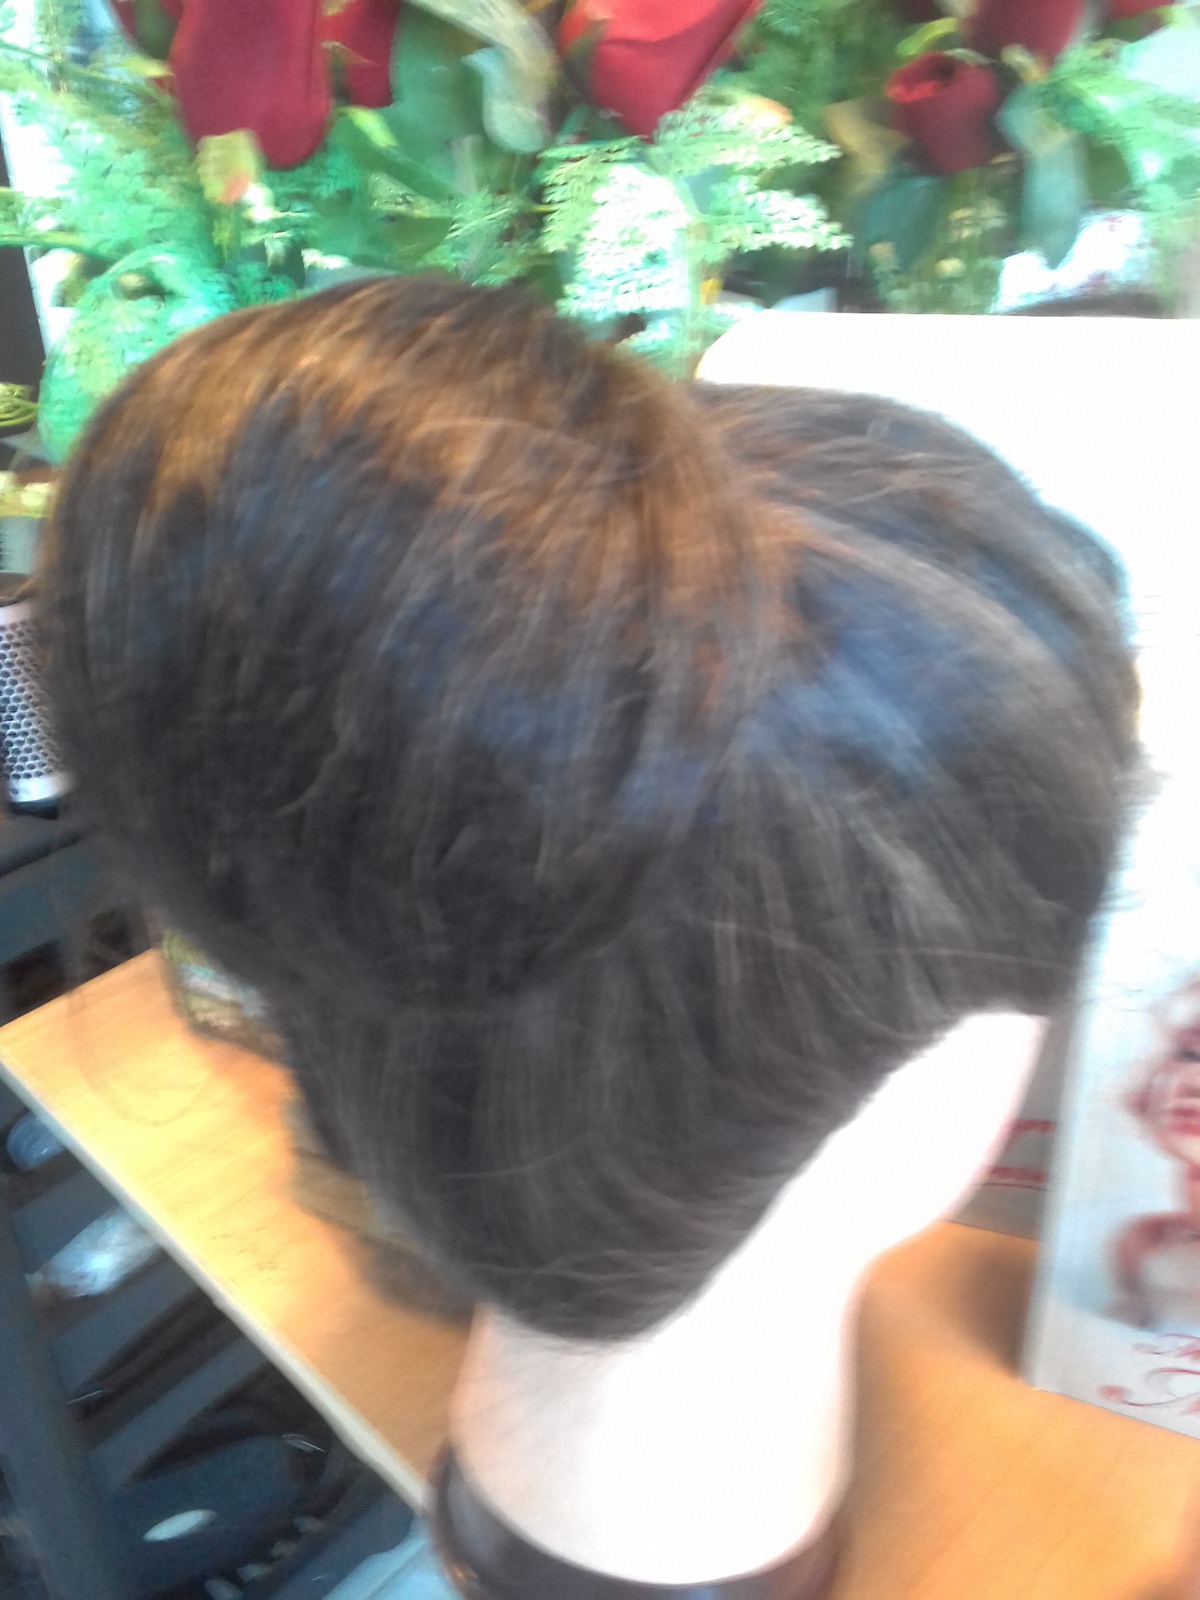 Penteado coque bola classico preferido pelas noivas, amo este penteado. cabelo cabeleireiro(a)